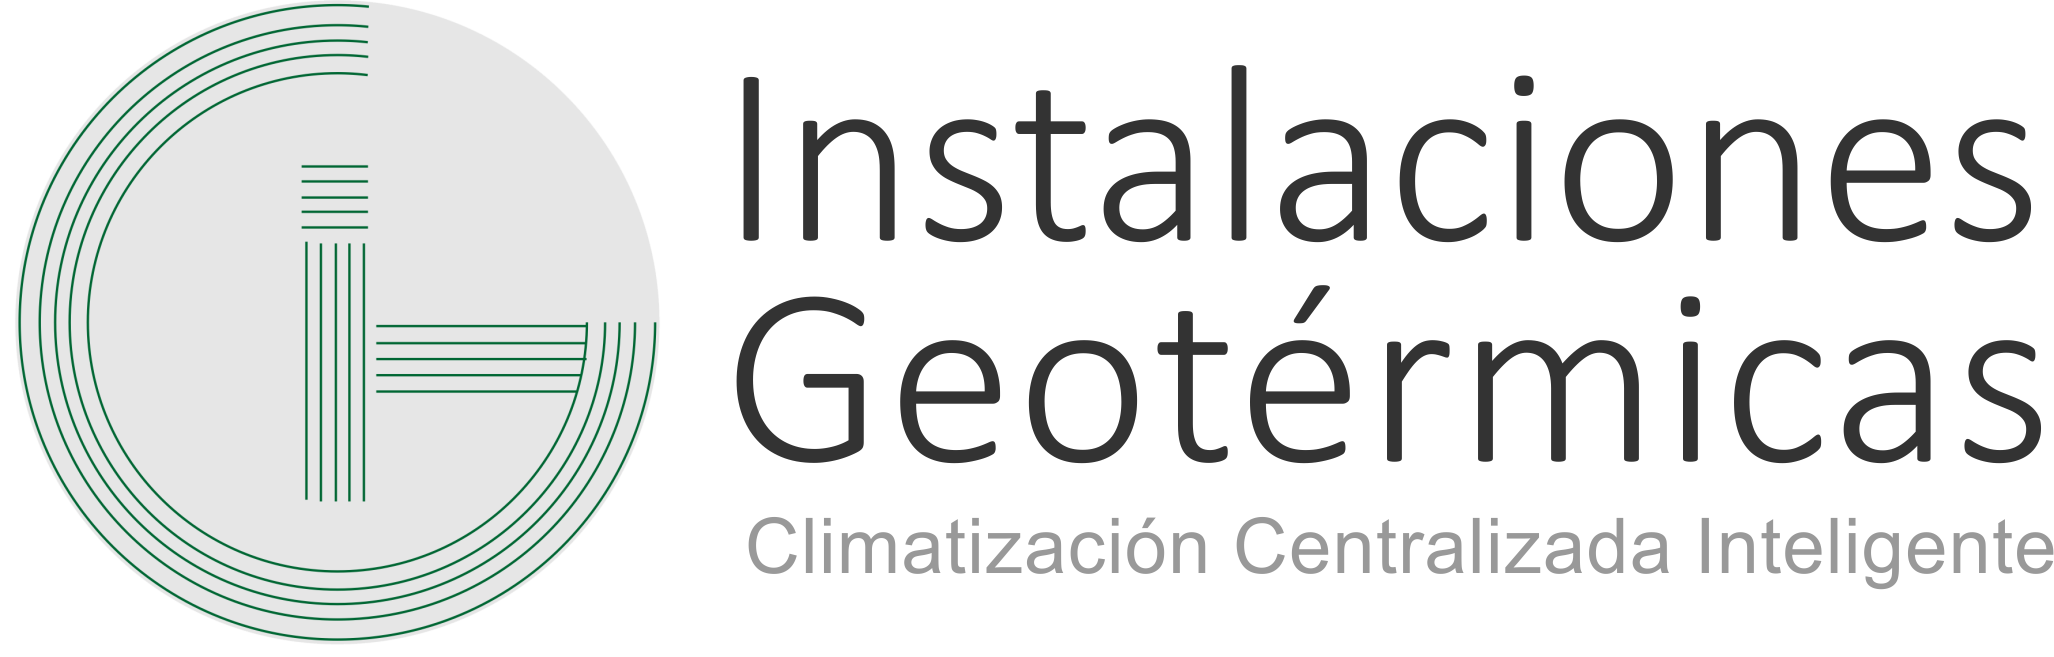 logo instalaciones geotermicas, sistema de climatización central